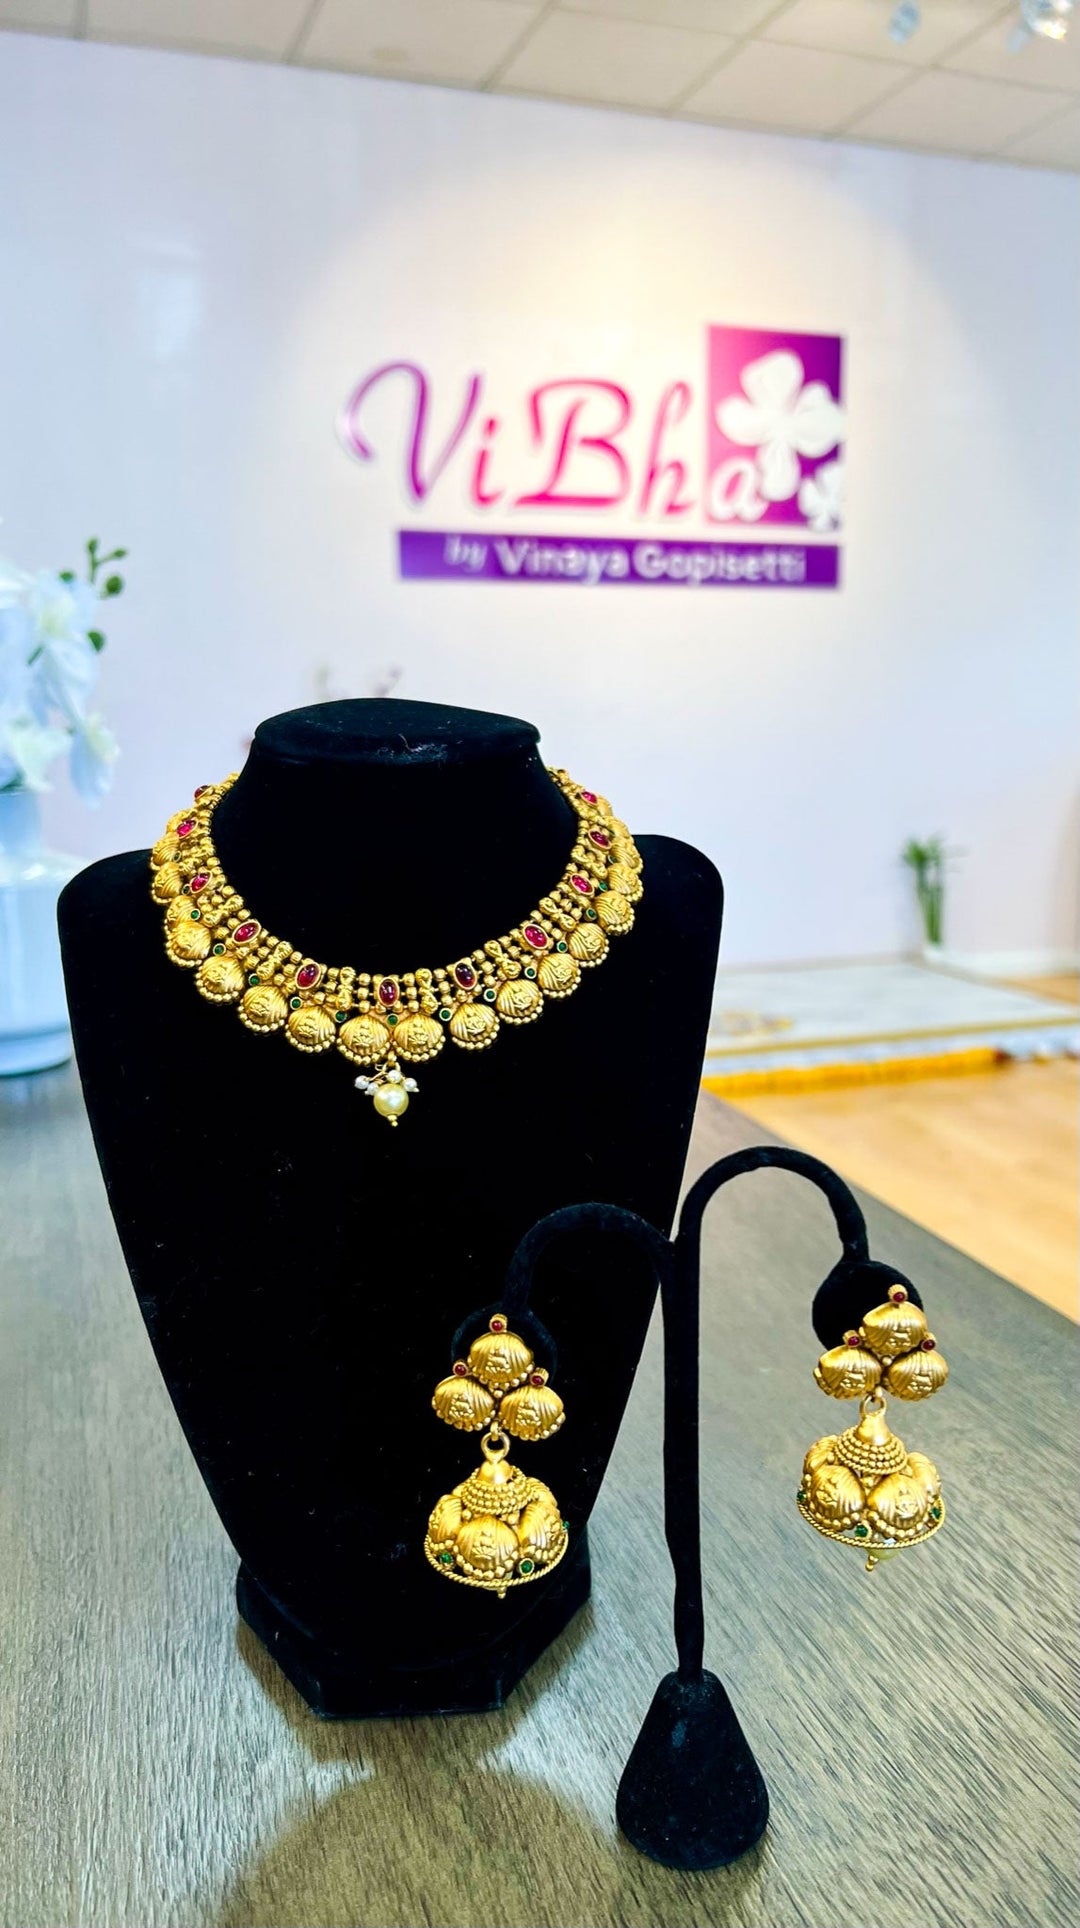 Accessories & Jewelry - Lakshmi Motif Temple Jewelry